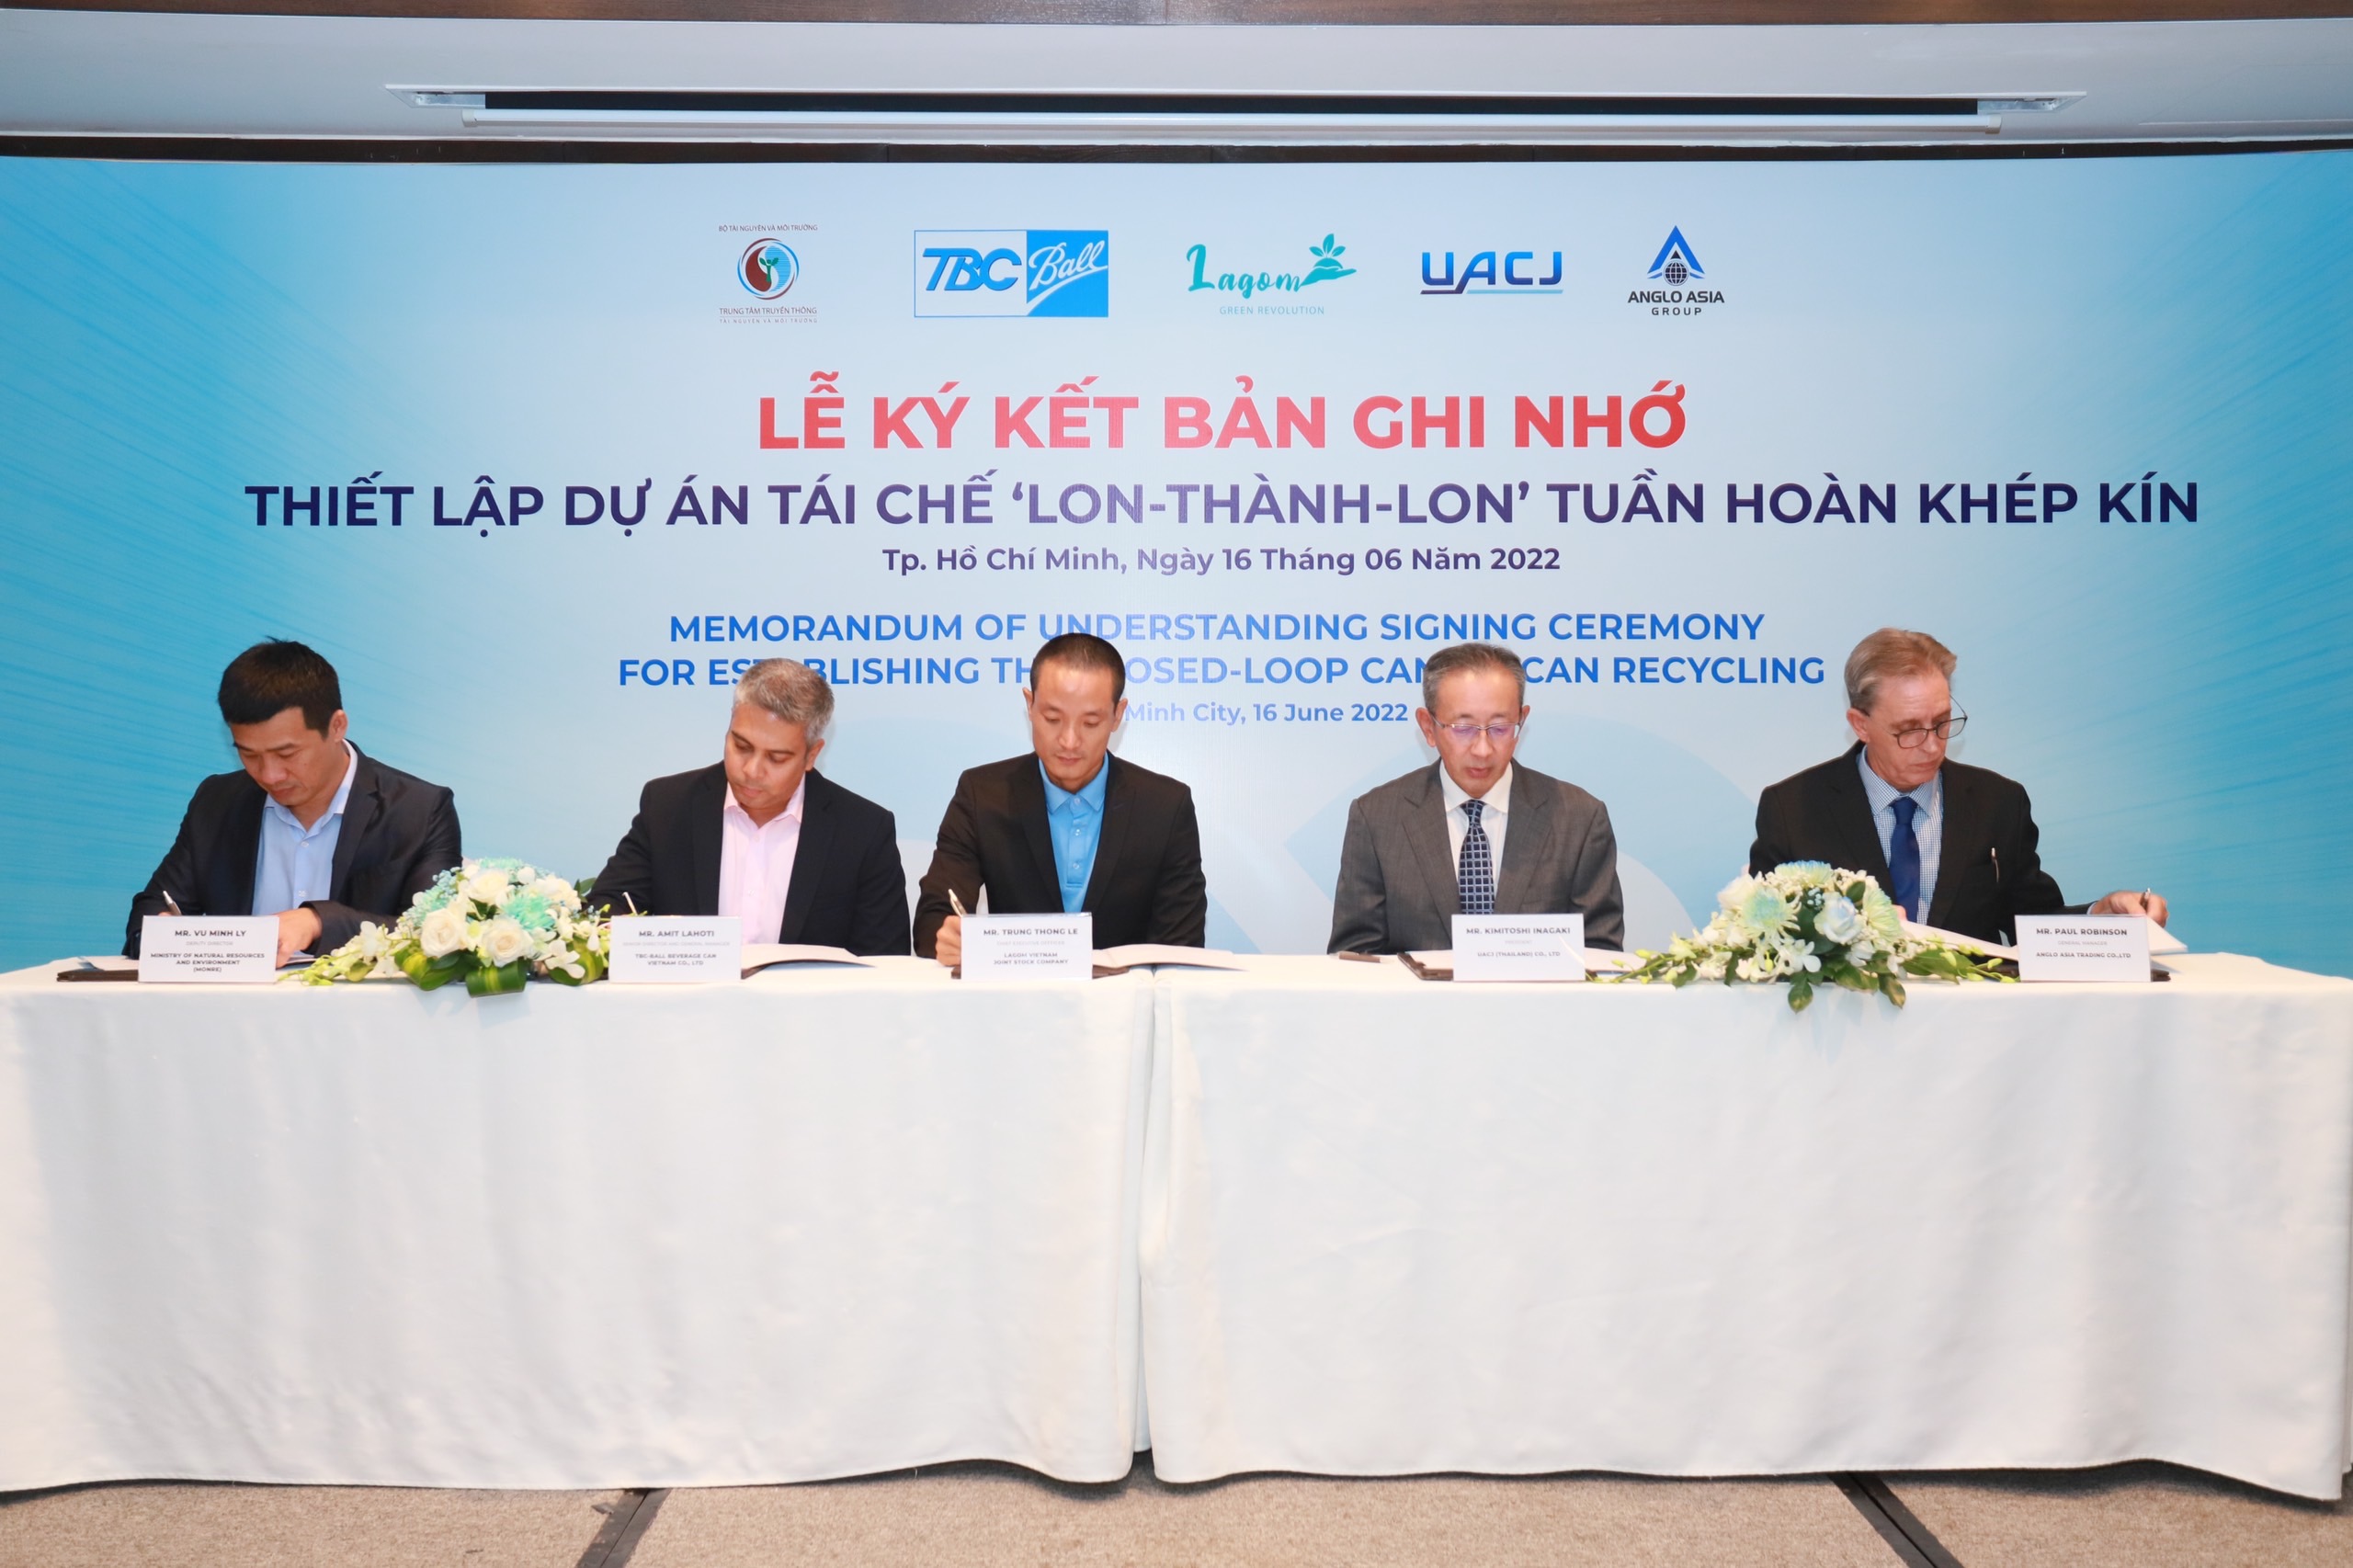 Trung tâm Truyền thông và Môi trường  ( Bộ TN&MT) cùng 4 DN: Công ty TNHH TBC-BALL Việt Nam, Công ty TNHH UACJ (Thái Lan), Công ty TNHH Anglo Asia (Thái Lan) và Công ty Cổ Phần Lagom Việt Nam đã tiến hành ký kết Biên bản ghi nhớ về việc triển khai dự án tái chế tuần hoàn khép kín Lon – thành – Lon (“Can – to – Can”)